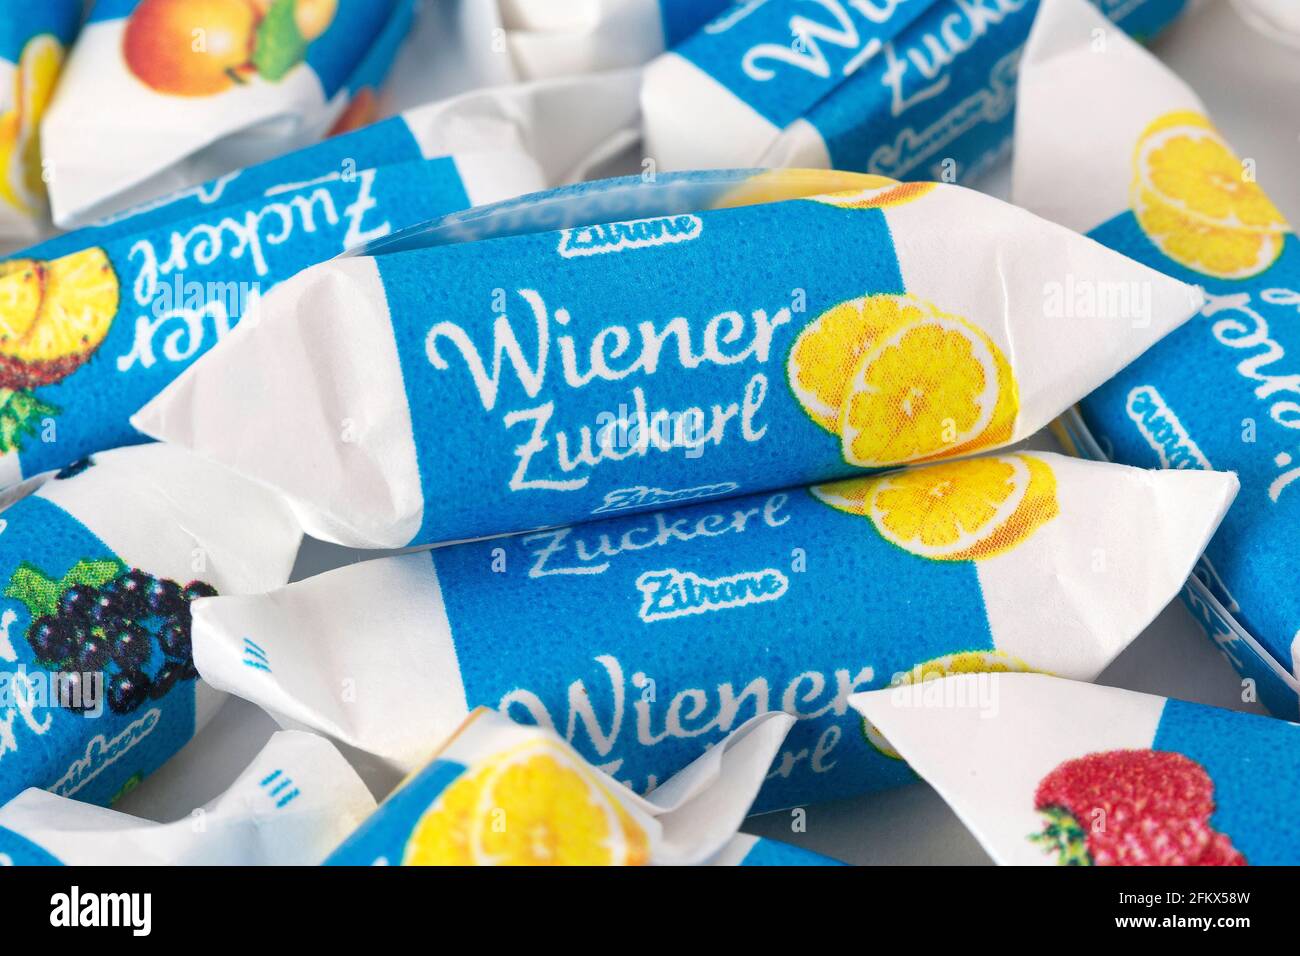 Wiener Zuckerl Foto Stock